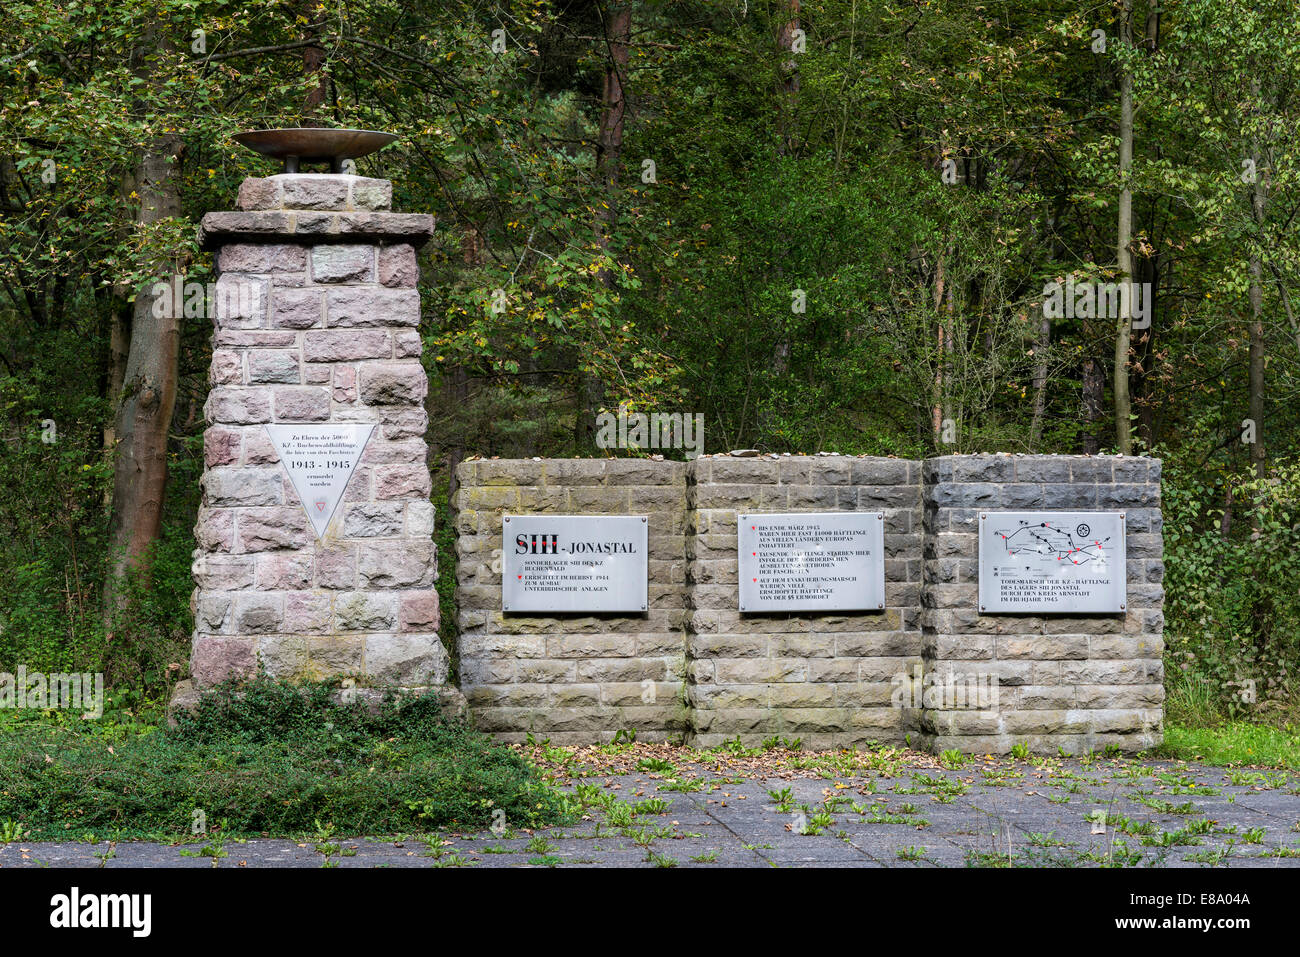 Memoriale al campo di concentramento i prigionieri, segreto Führer quartier generale per Hitler, ex bunker con 25 gallerie, costruito 1944-1945 Foto Stock